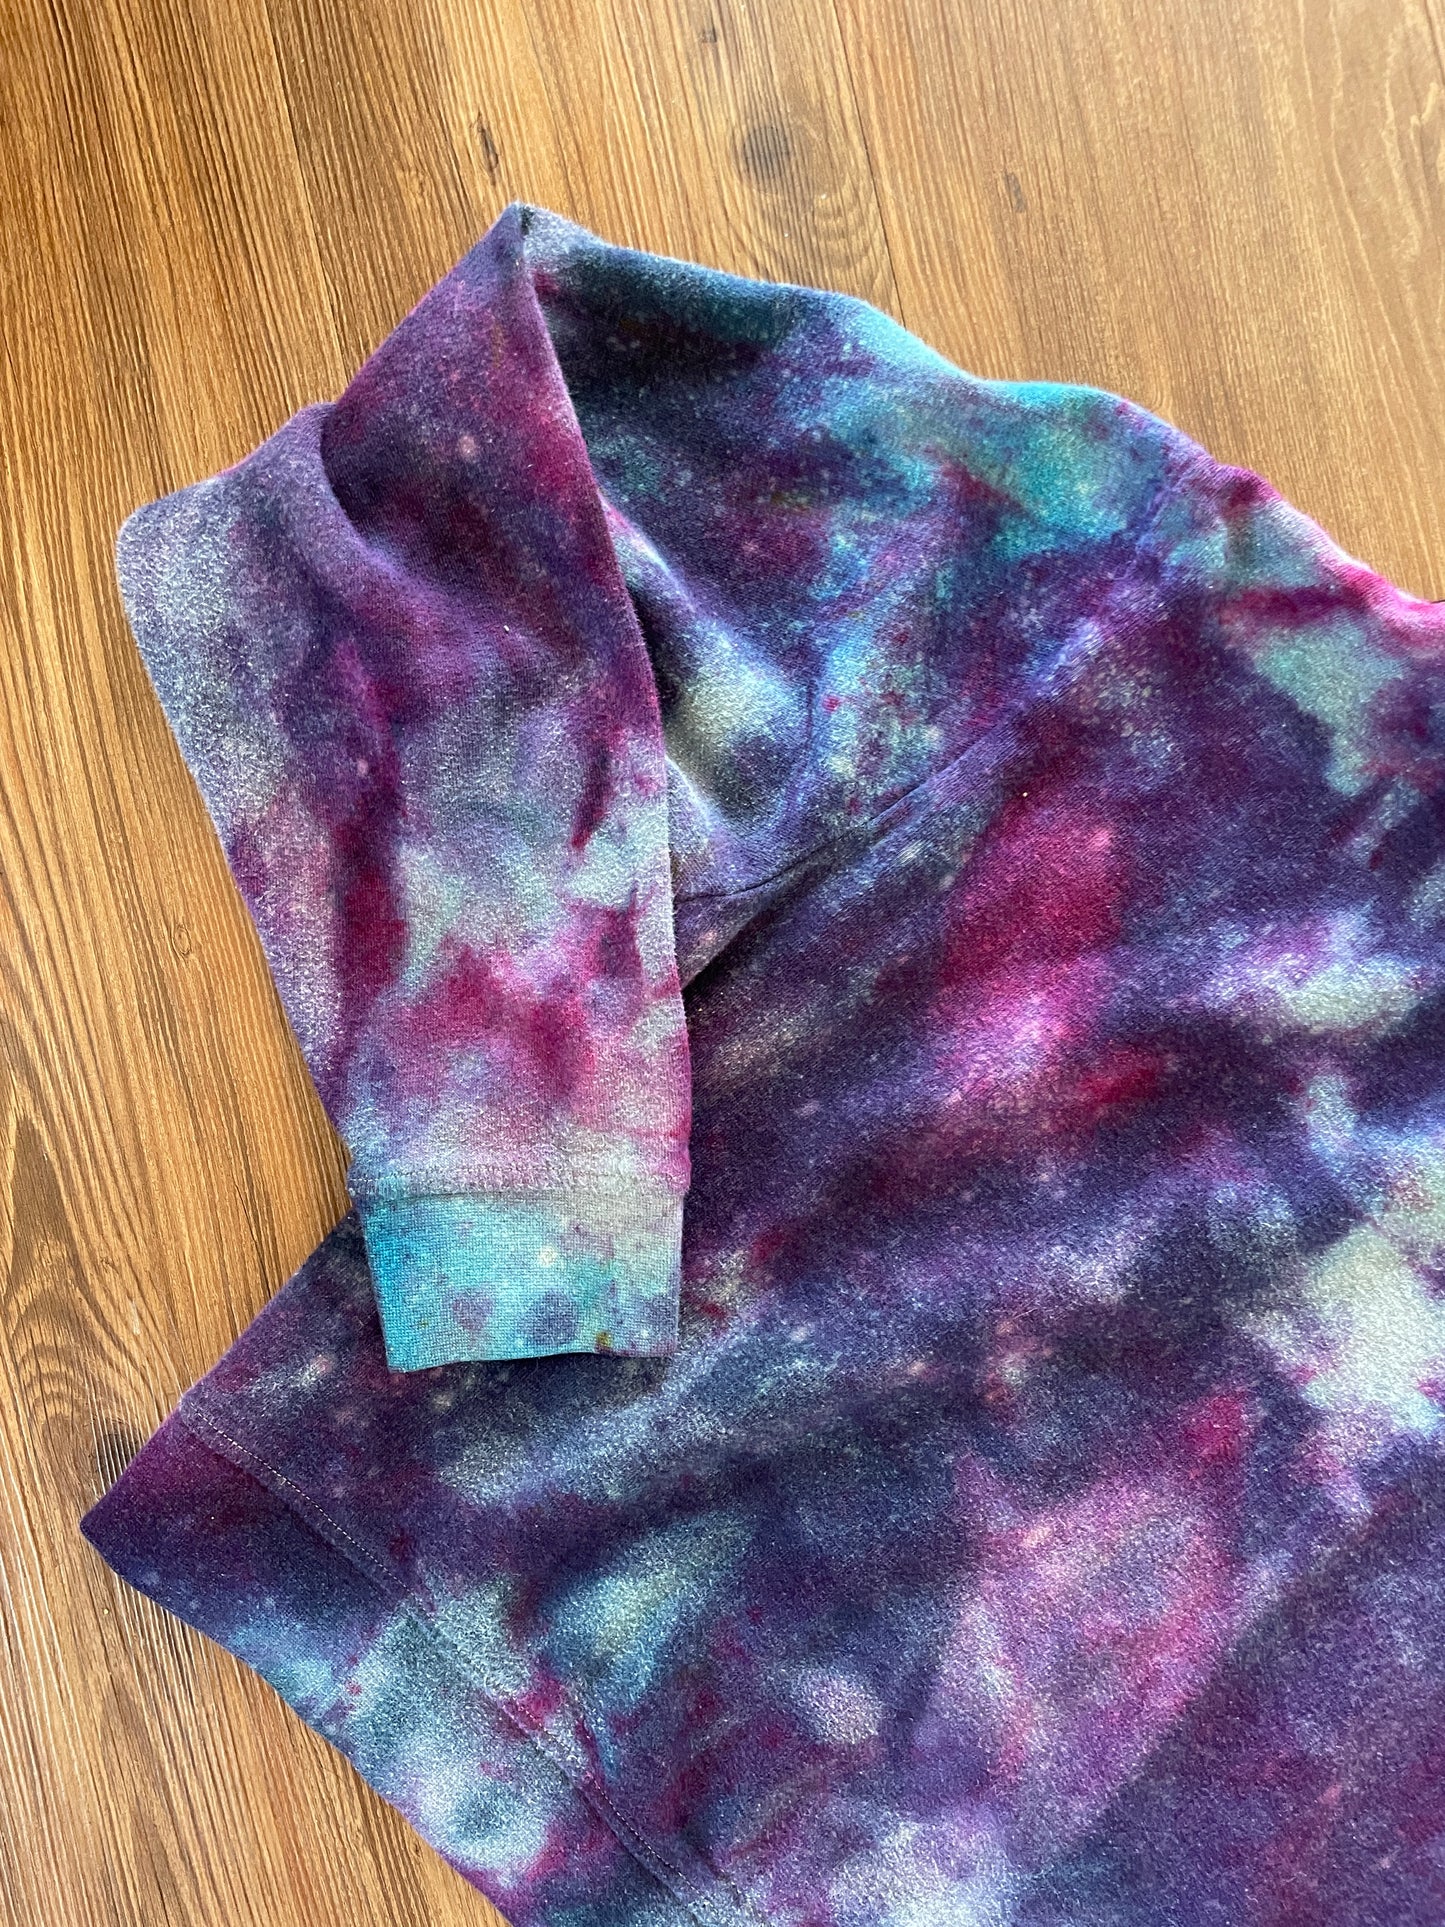 Medium Women's Vans Handmade Tie Dye Hoodie | Dark Blue and Purple Galaxy Ice Dye Tie Dye Long Sleeve Sweatshirt